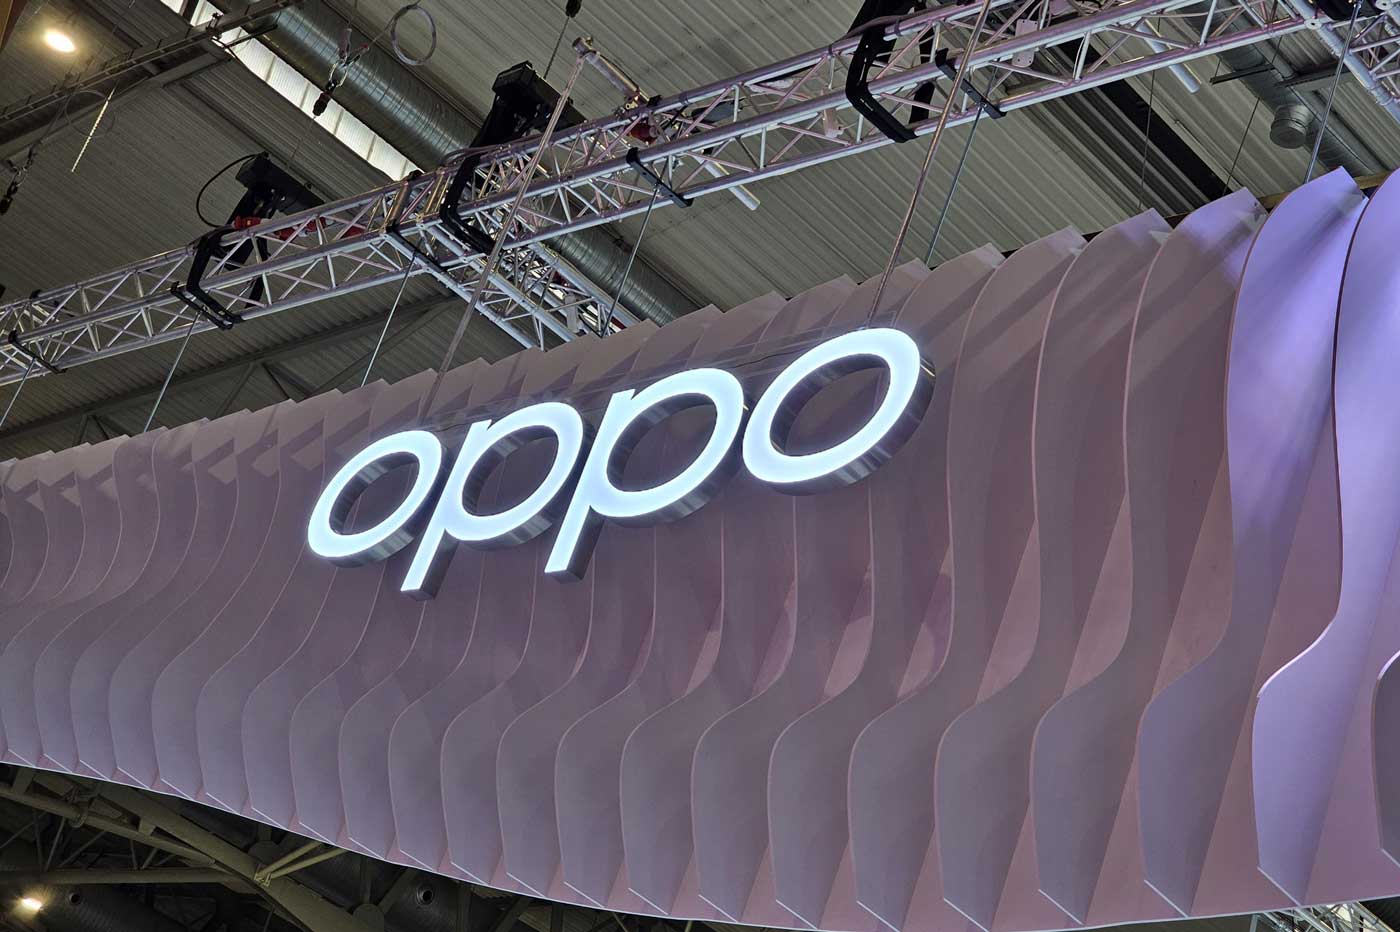 OPPO logo